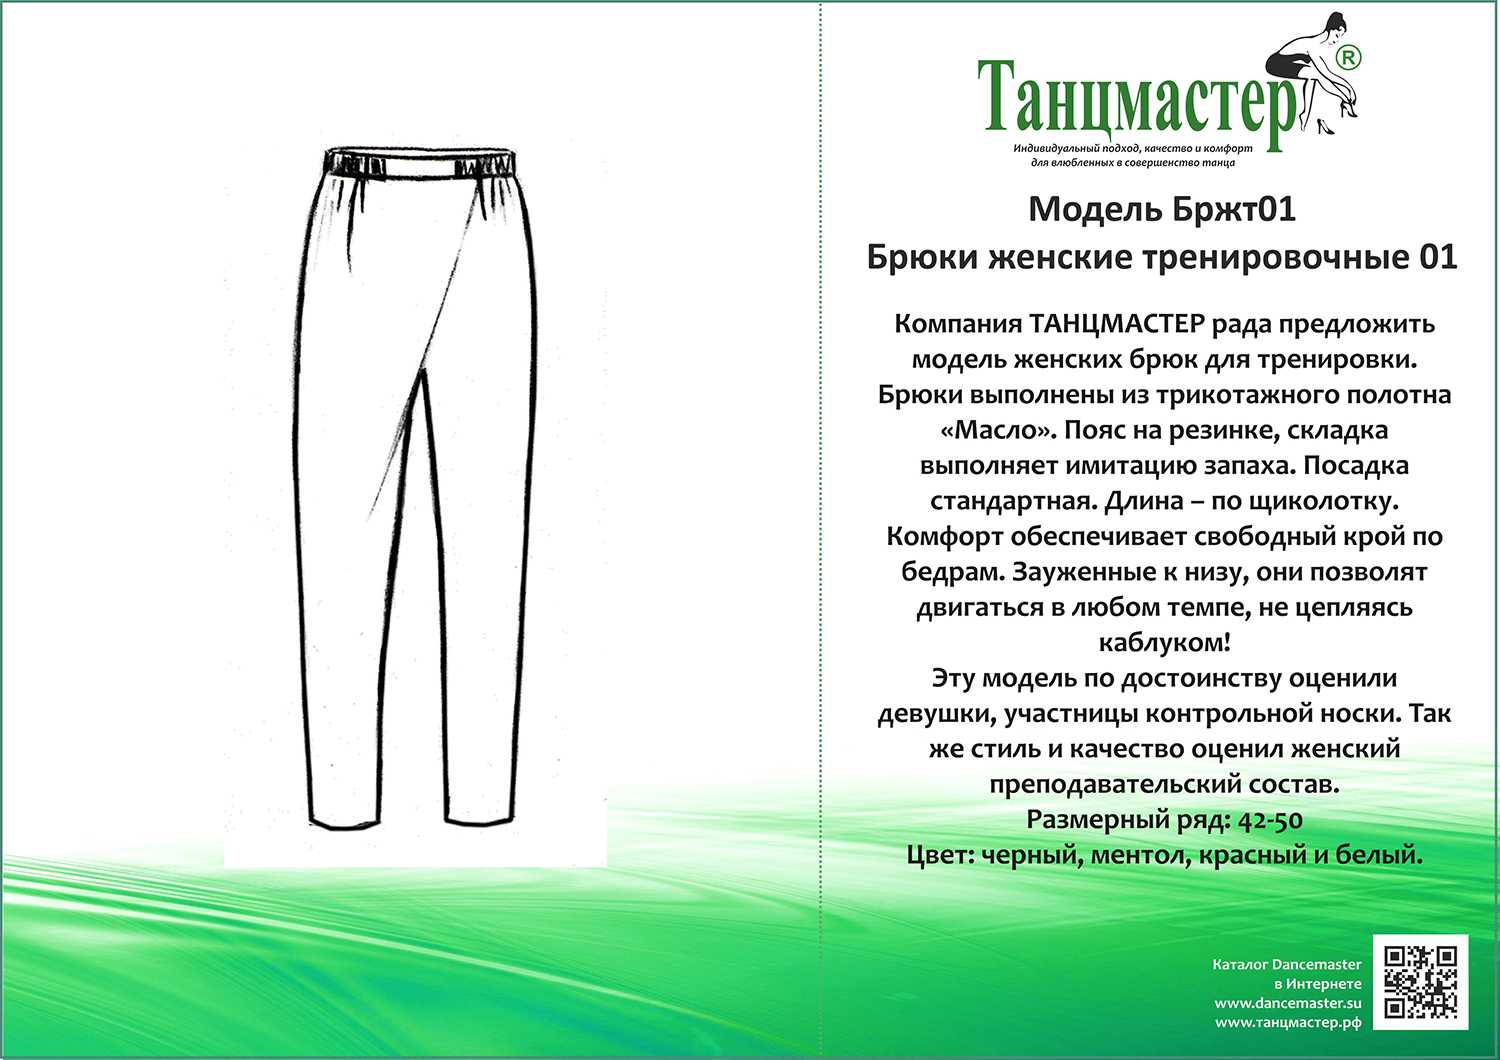 Укороченные брюки - разновидности с названиями, как правильно выбрать фасон